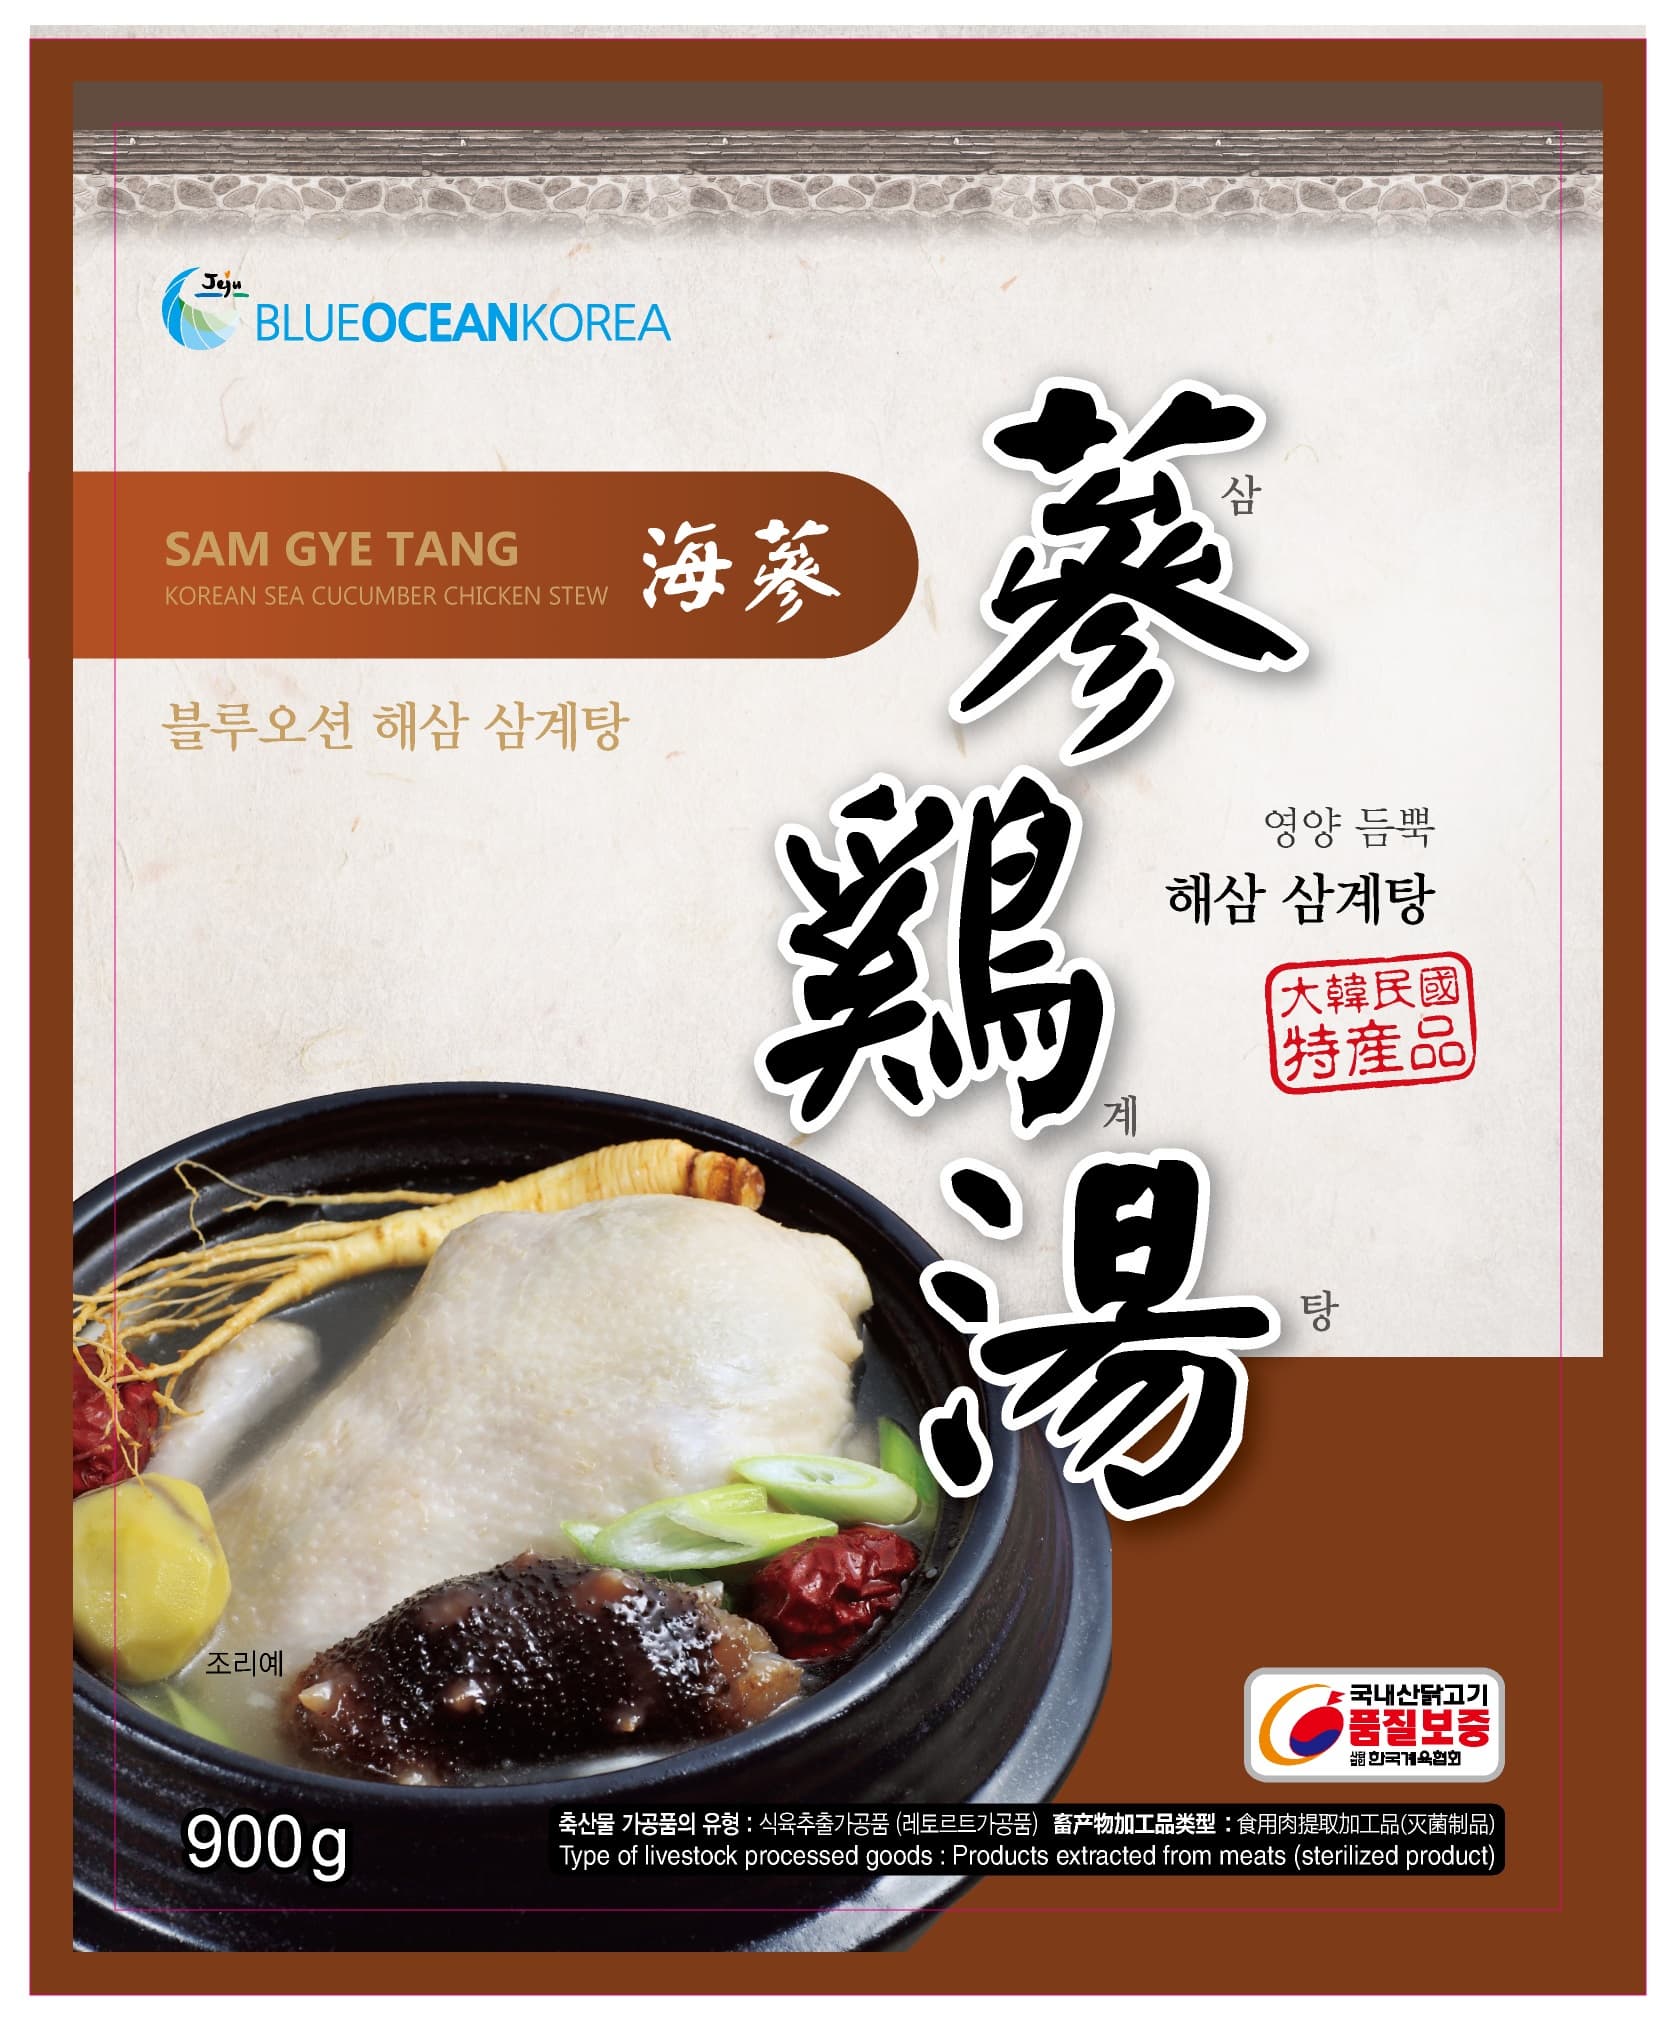 Sea Cucumber SAMGYETANG, JEJU BLUEOCEAN KOREA